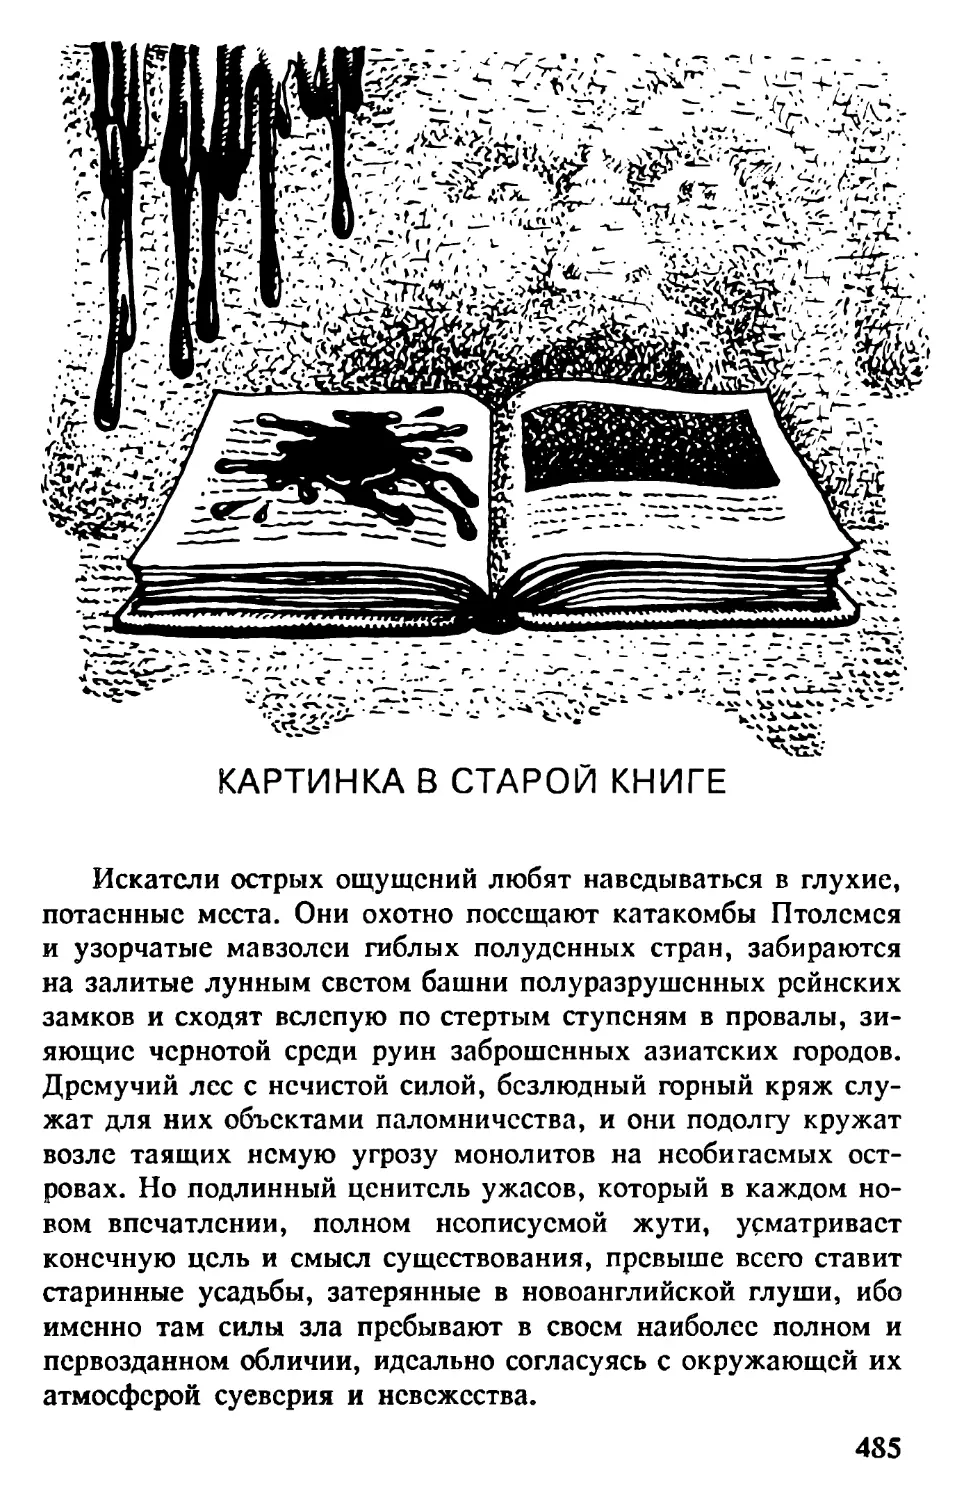 Картинка в старой книге. Пер. О. Минковского